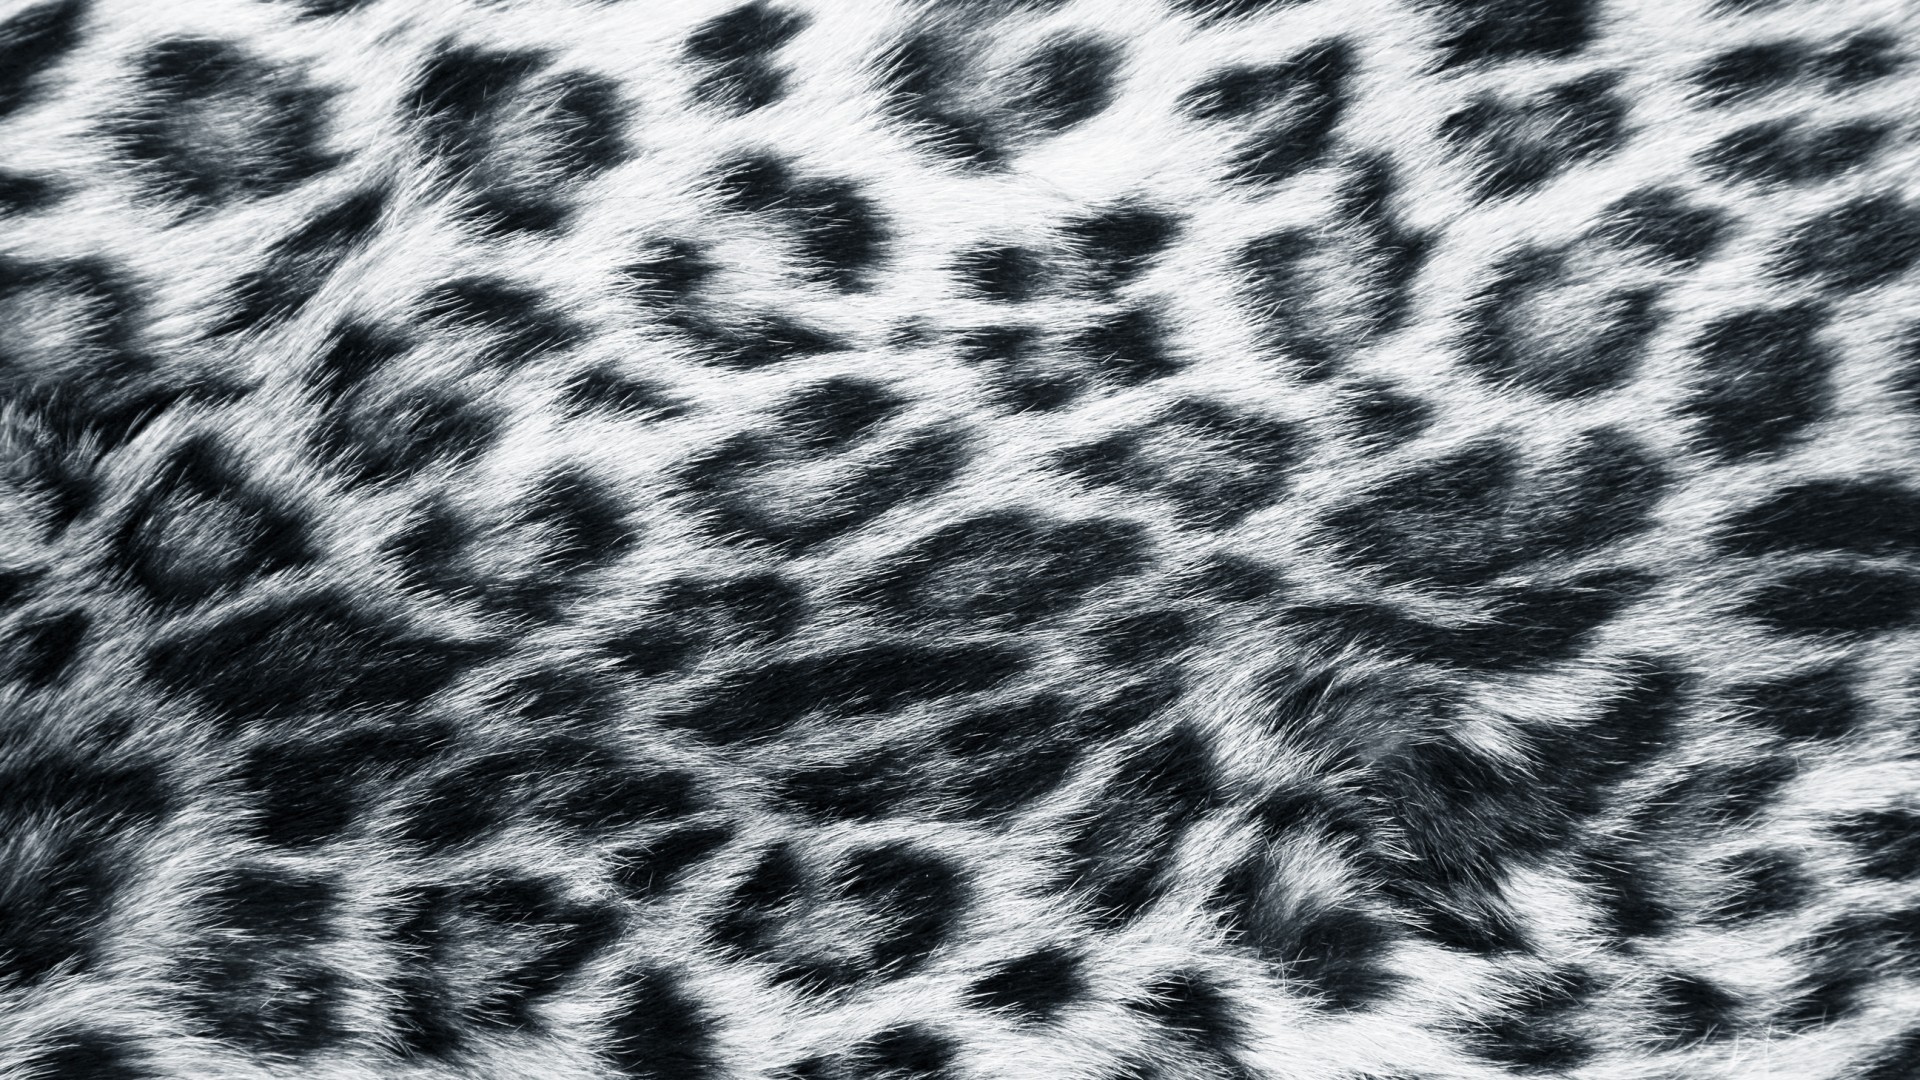 Fur Snow Leopard Print - HD Wallpaper 